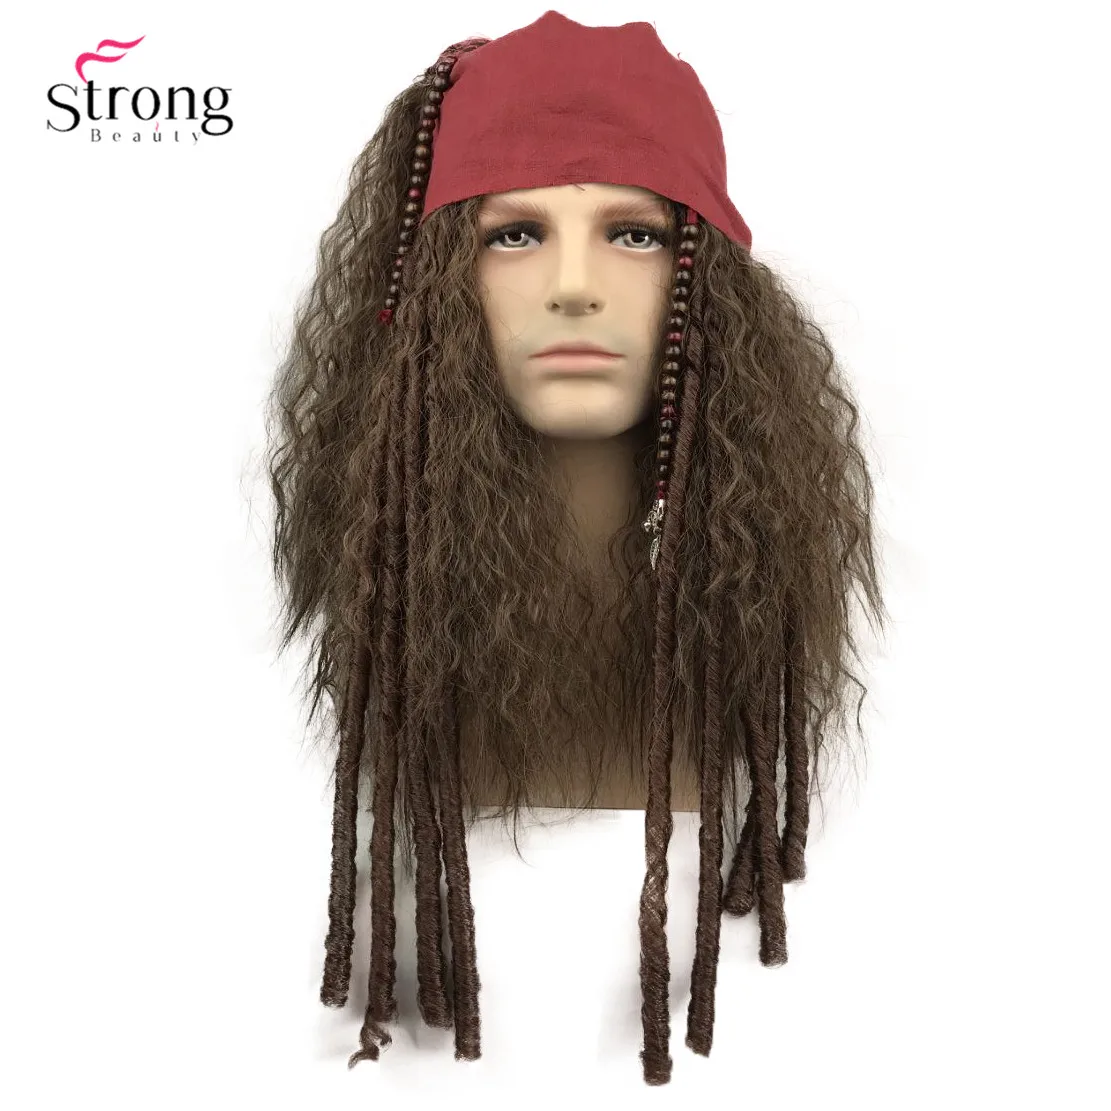 StrongBeauty-peluca pirata para Cosplay de Jack Sparrow, pelucas de capitán y accesorios completos, pelo sintético